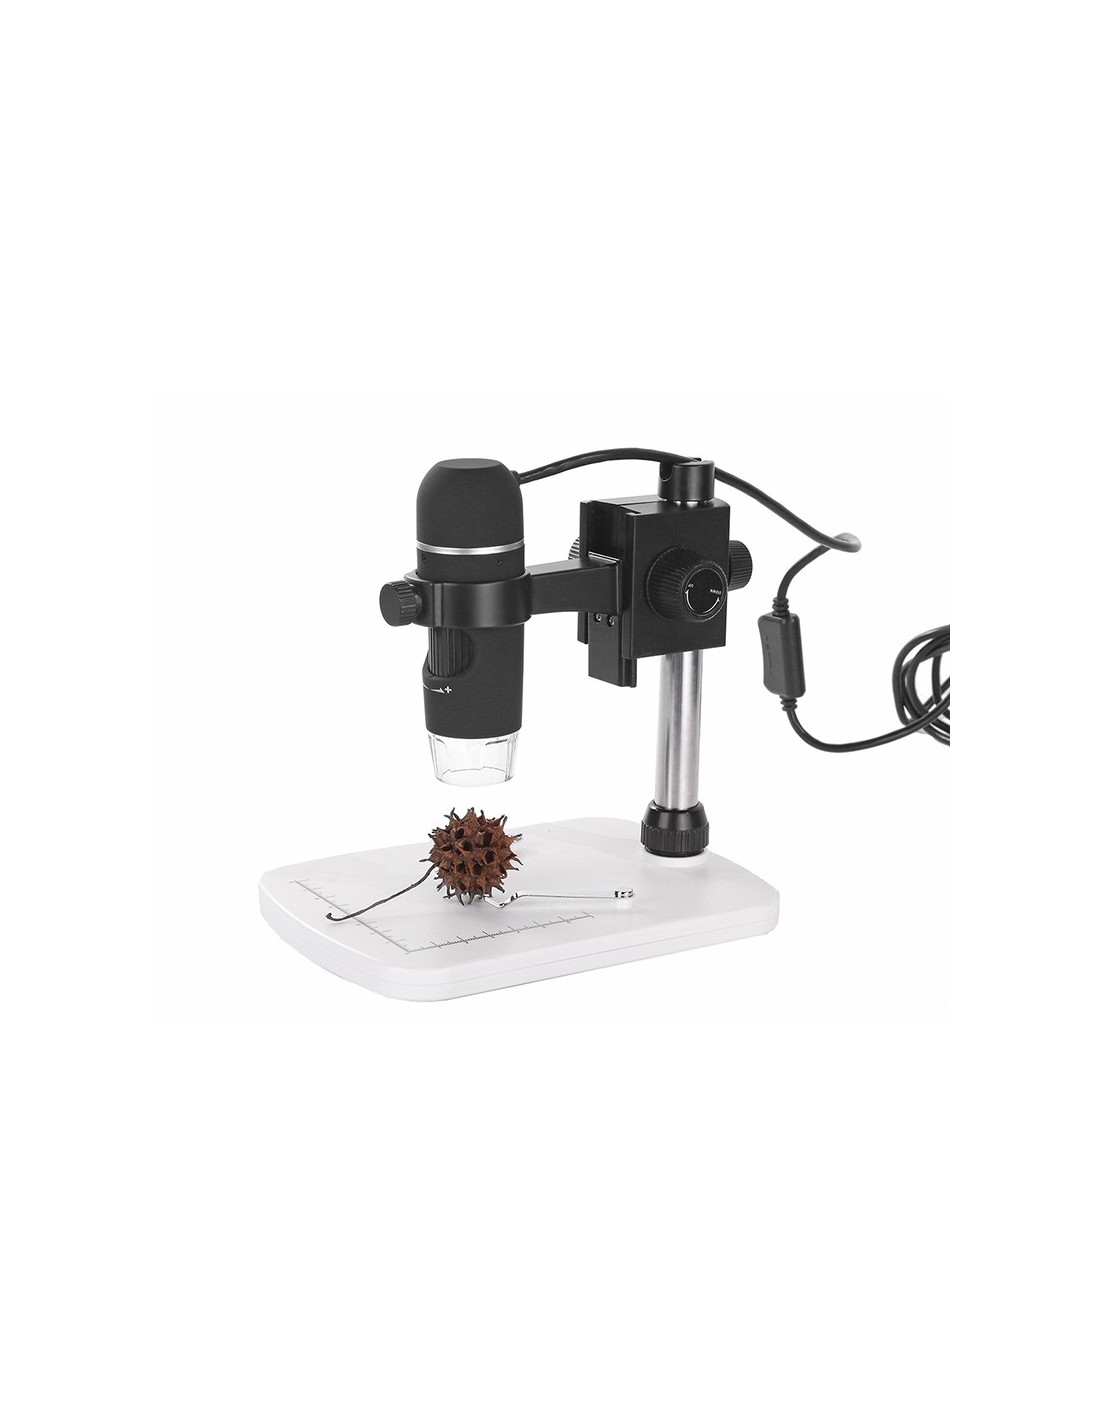 gfjfghfjfh Supporto per microscopio in Lega di Alluminio Portatile su e Giù Supporto per microscopio elettronico Digitale con Messa a Fuoco Manuale Regolabile 